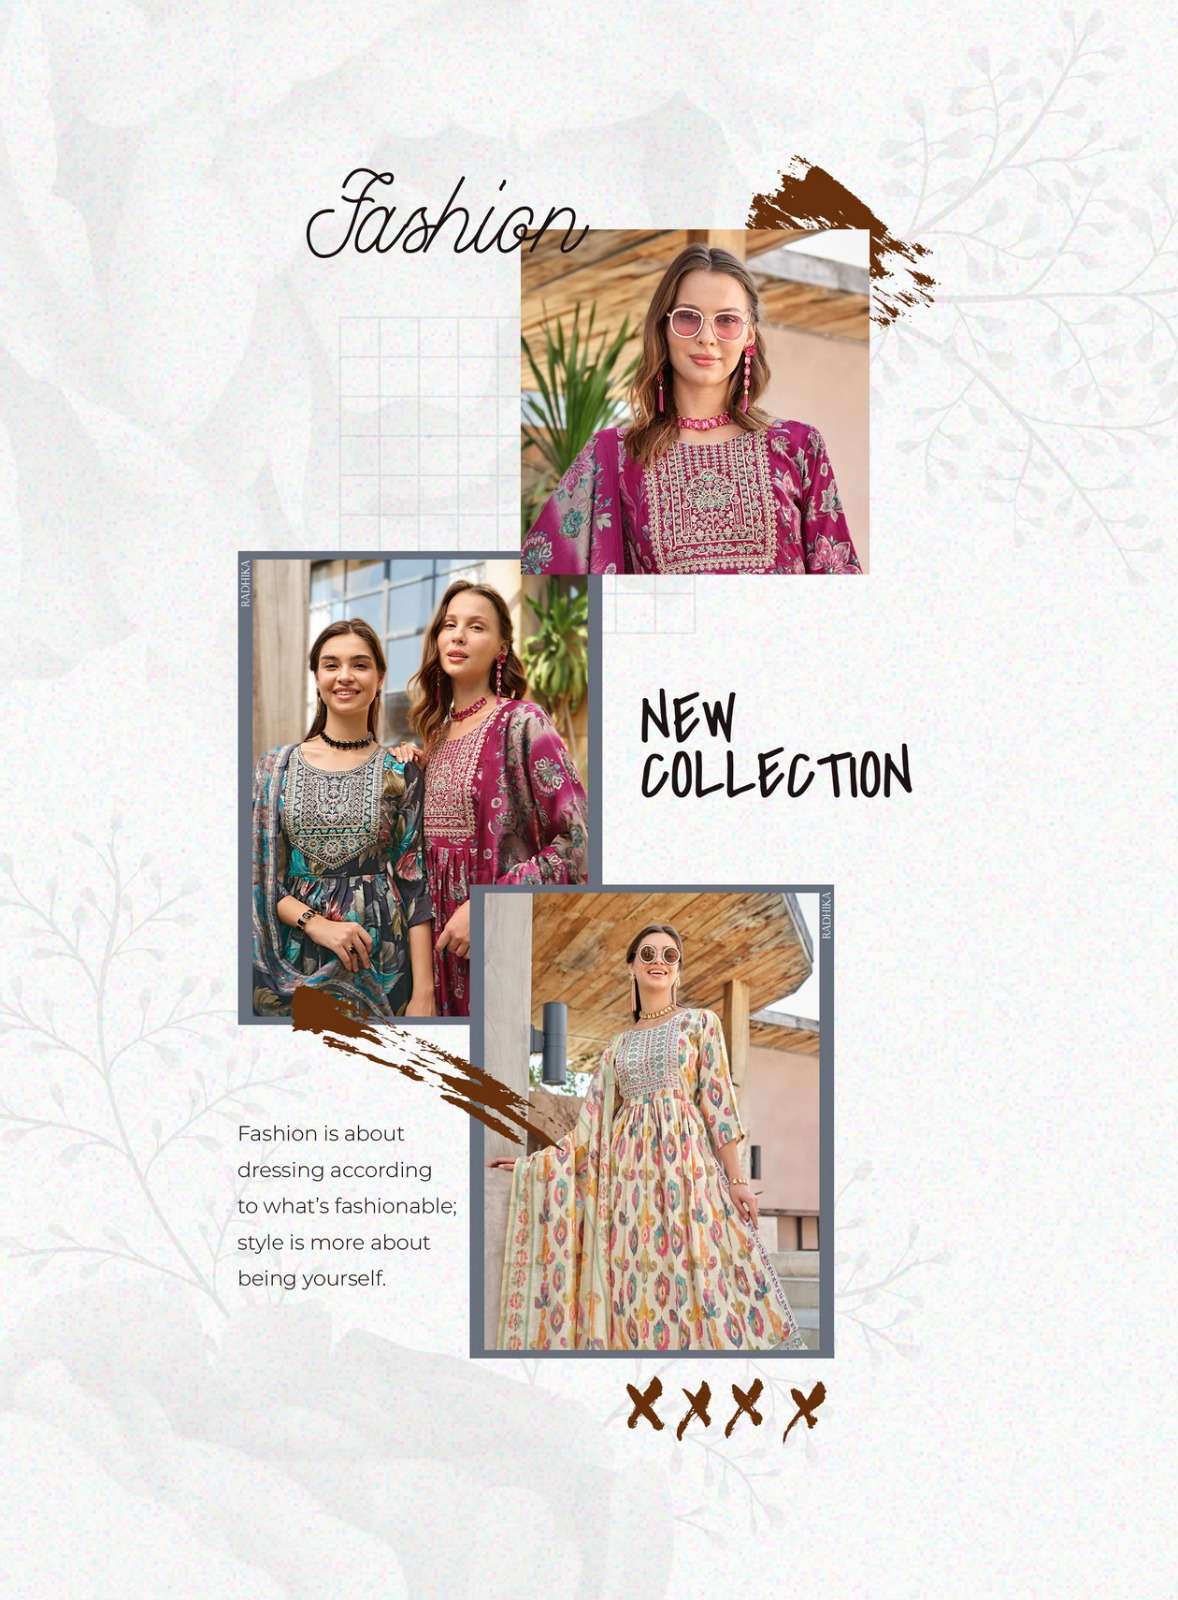 radhika lifestyle sunshine vol-3 3001-3008 series designer trending kurti set wholesaler surat gujarat